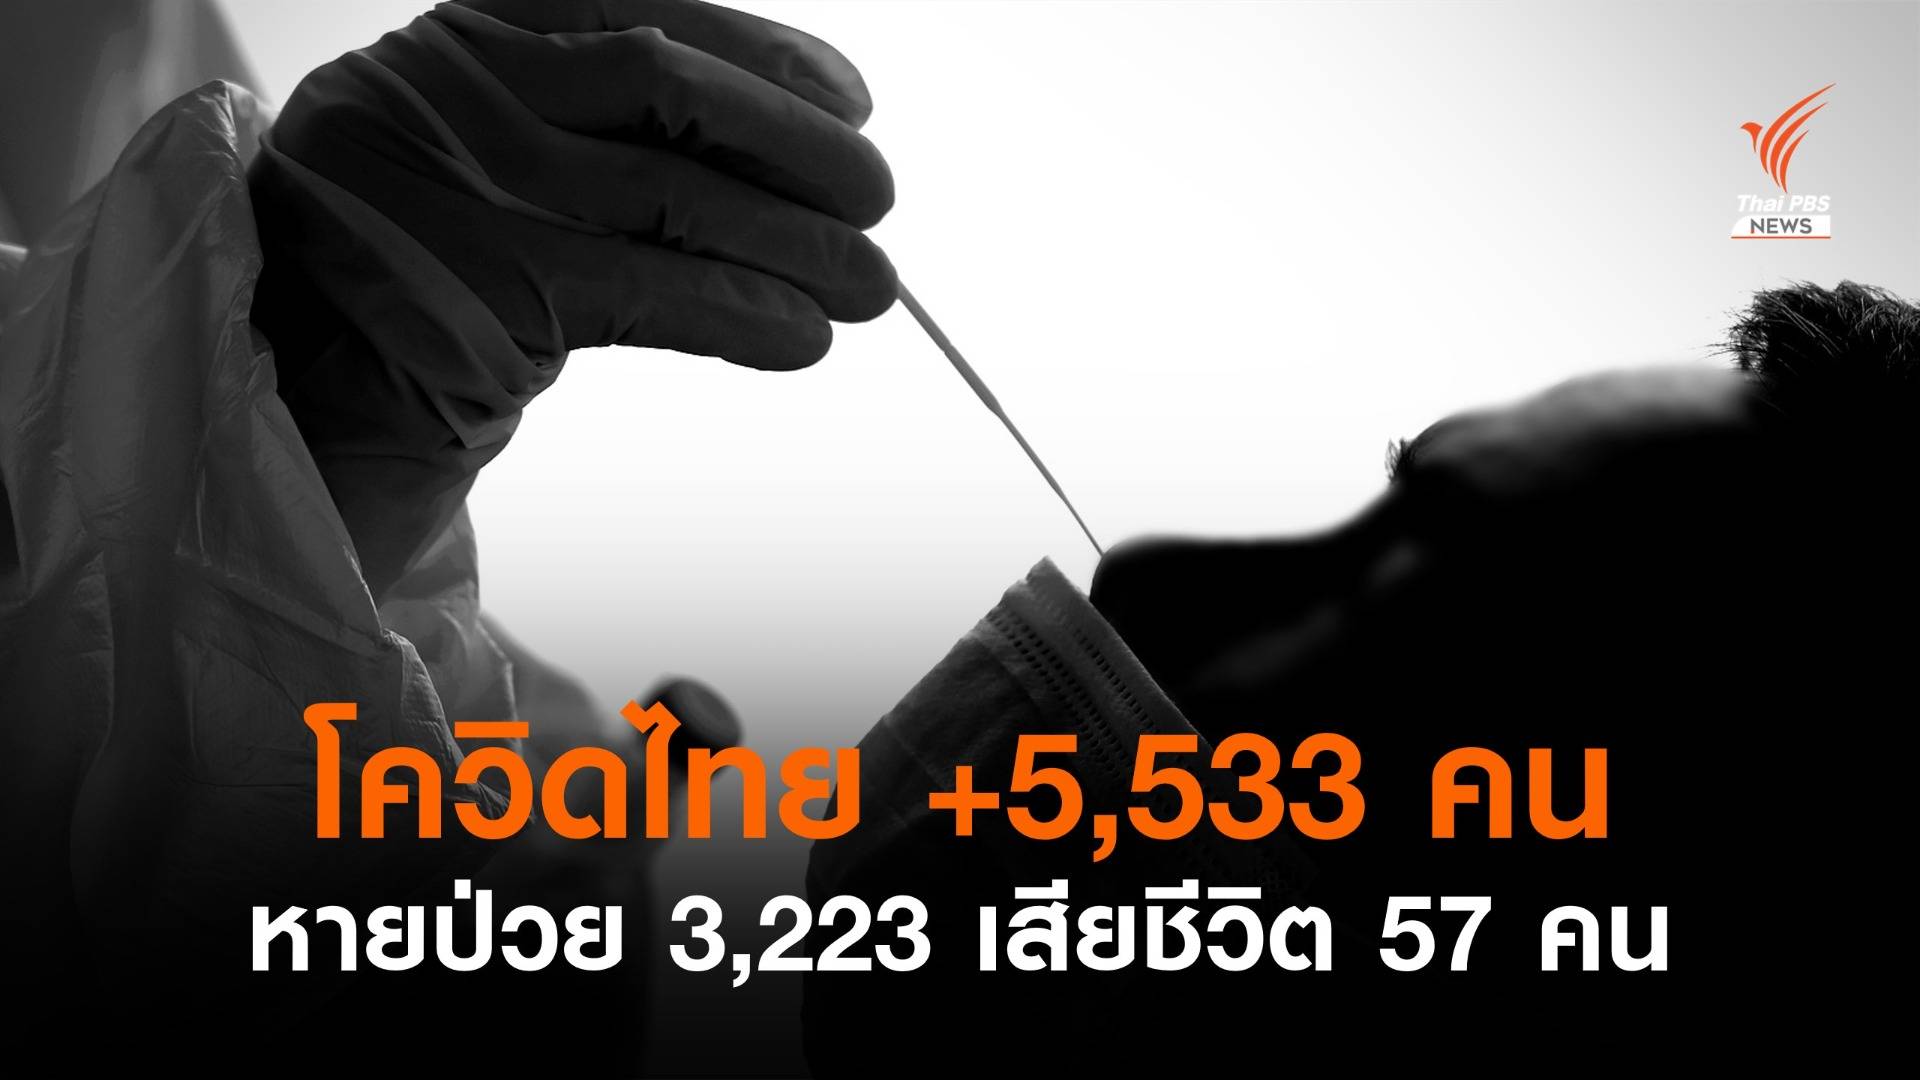 ไทยป่วยโควิดรายวันเพิ่ม 5,533 คน เสียชีวิต 57 คน